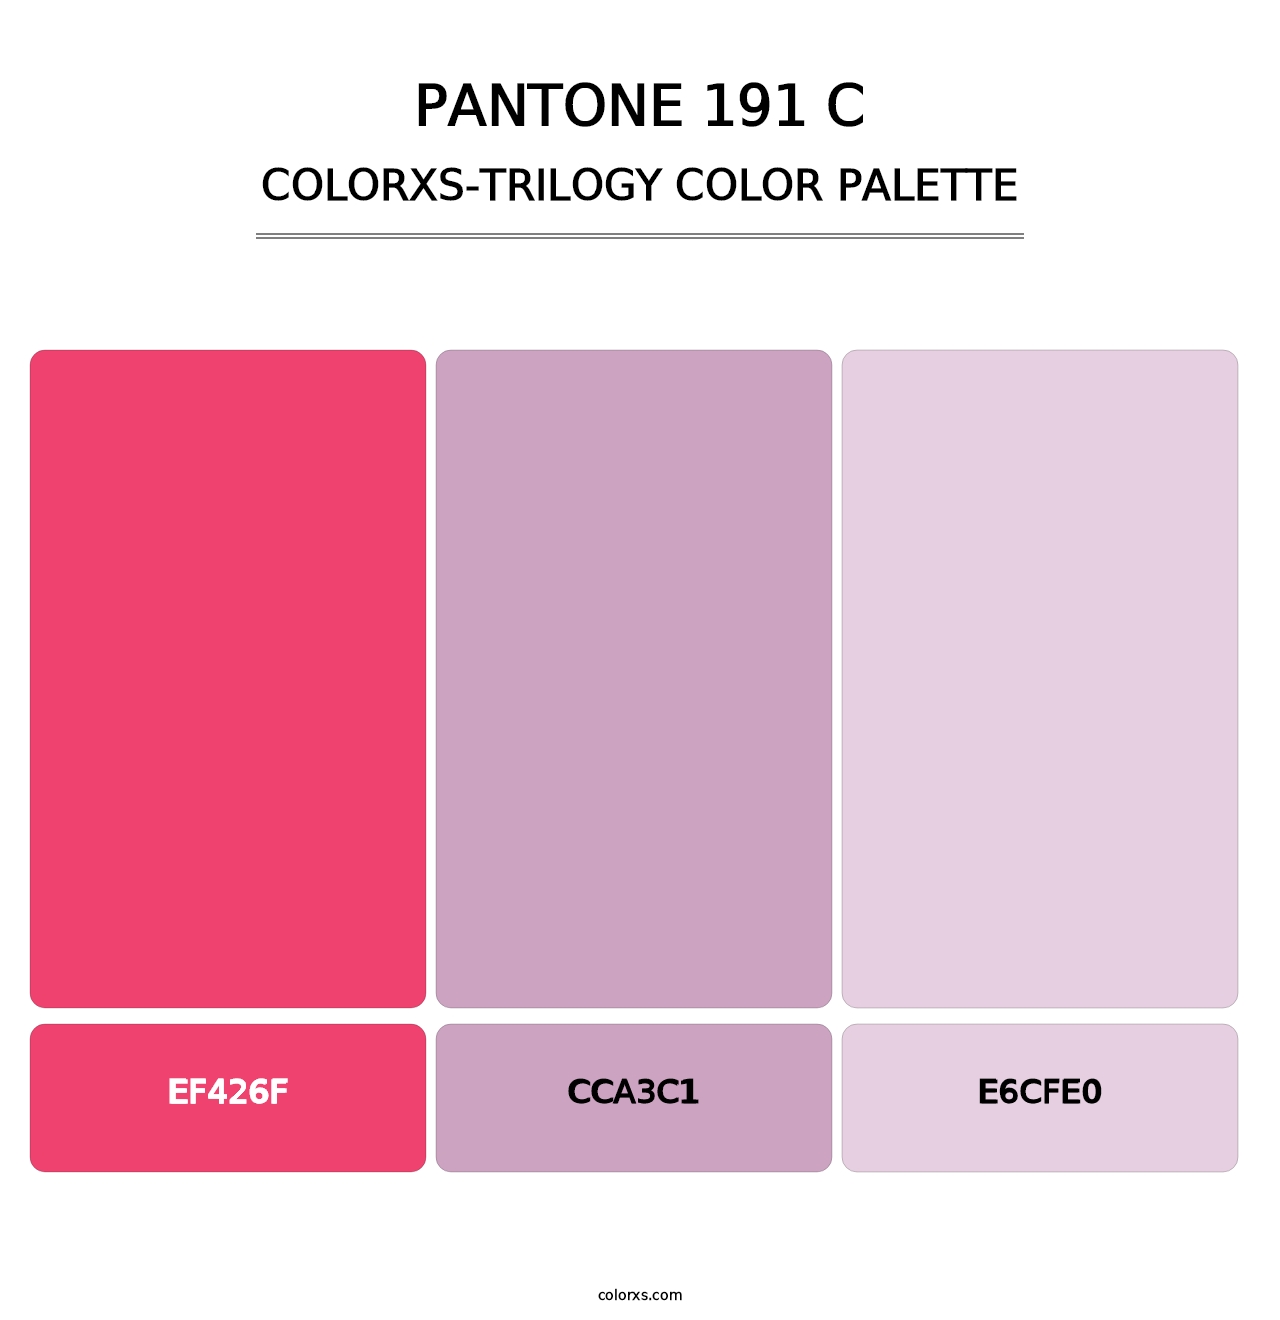 PANTONE 191 C - Colorxs Trilogy Palette